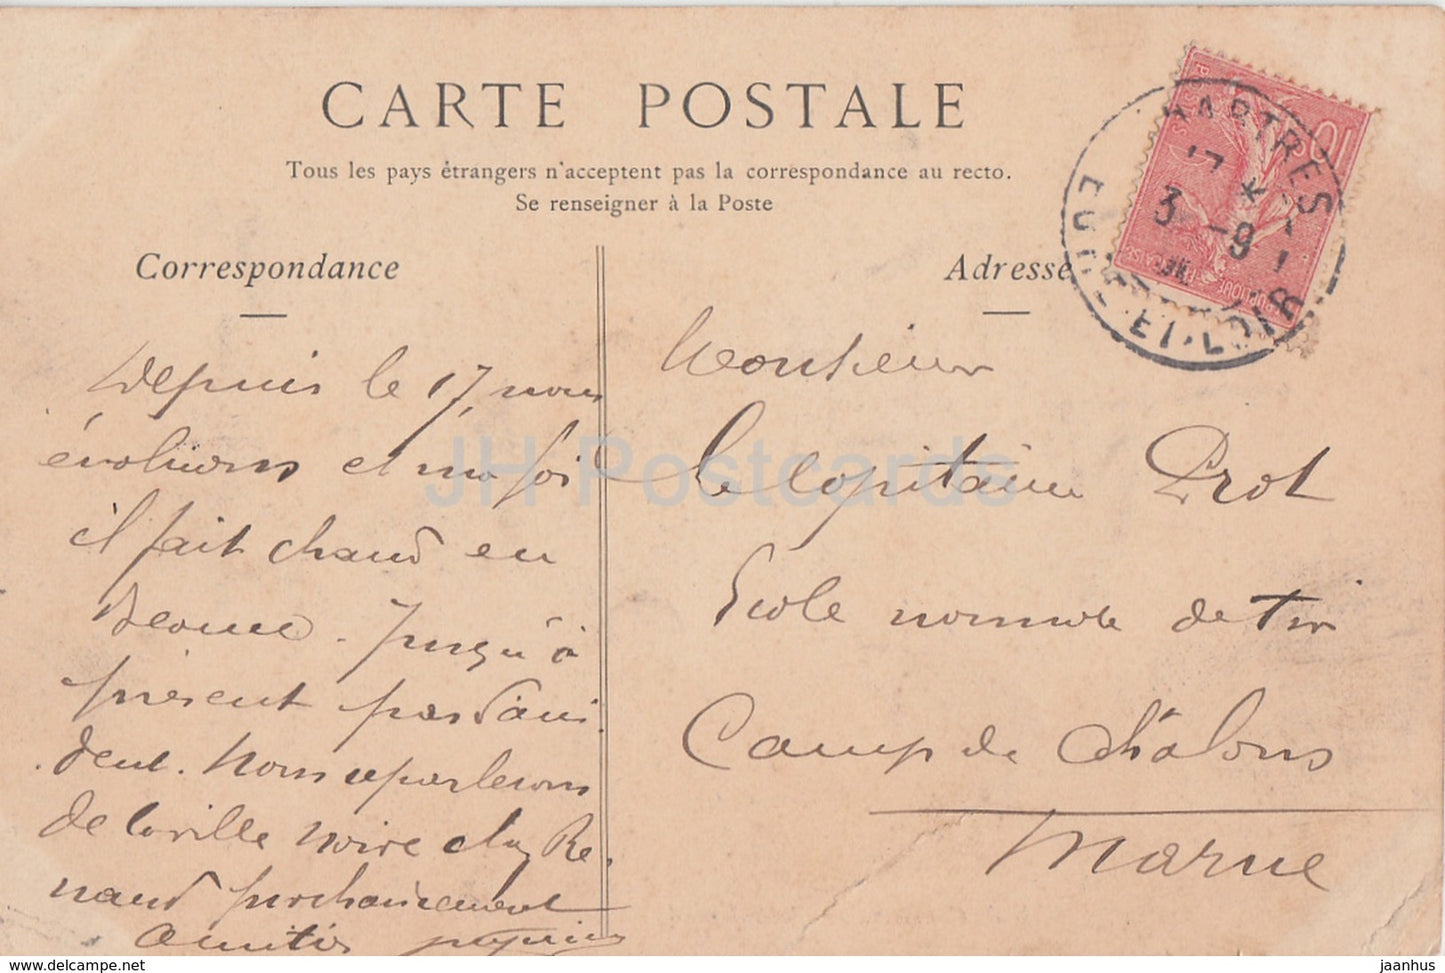 Kathedrale von Chartres - Portail Nord - 9 - Kathedrale - alte Postkarte - 1906 - Frankreich - gebraucht